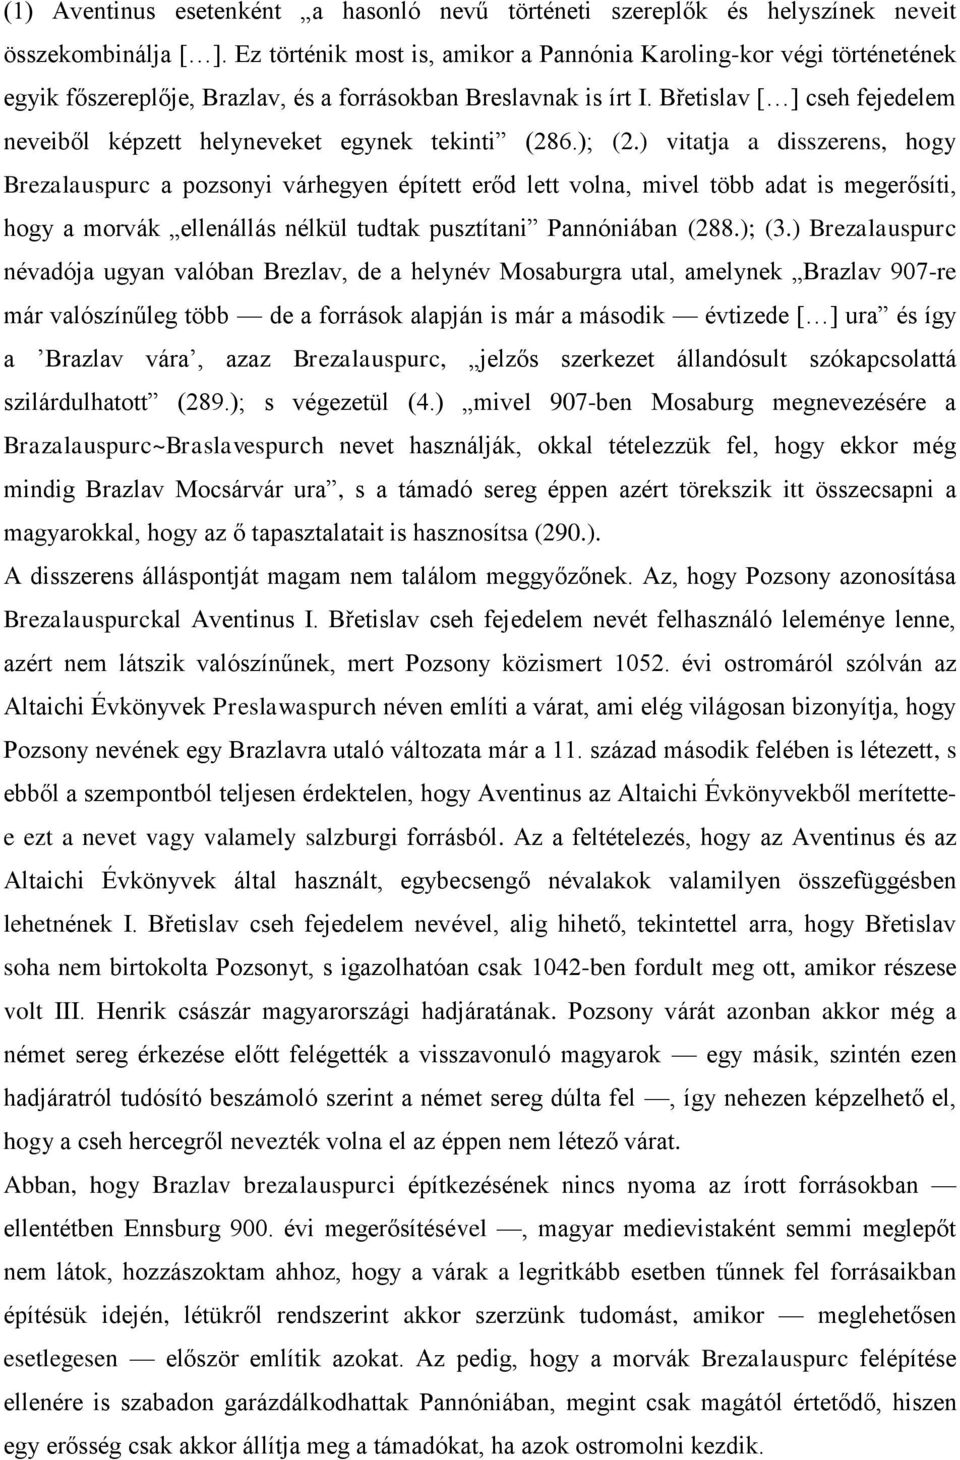 Břetislav [ ] cseh fejedelem neveiből képzett helyneveket egynek tekinti (286.); (2.